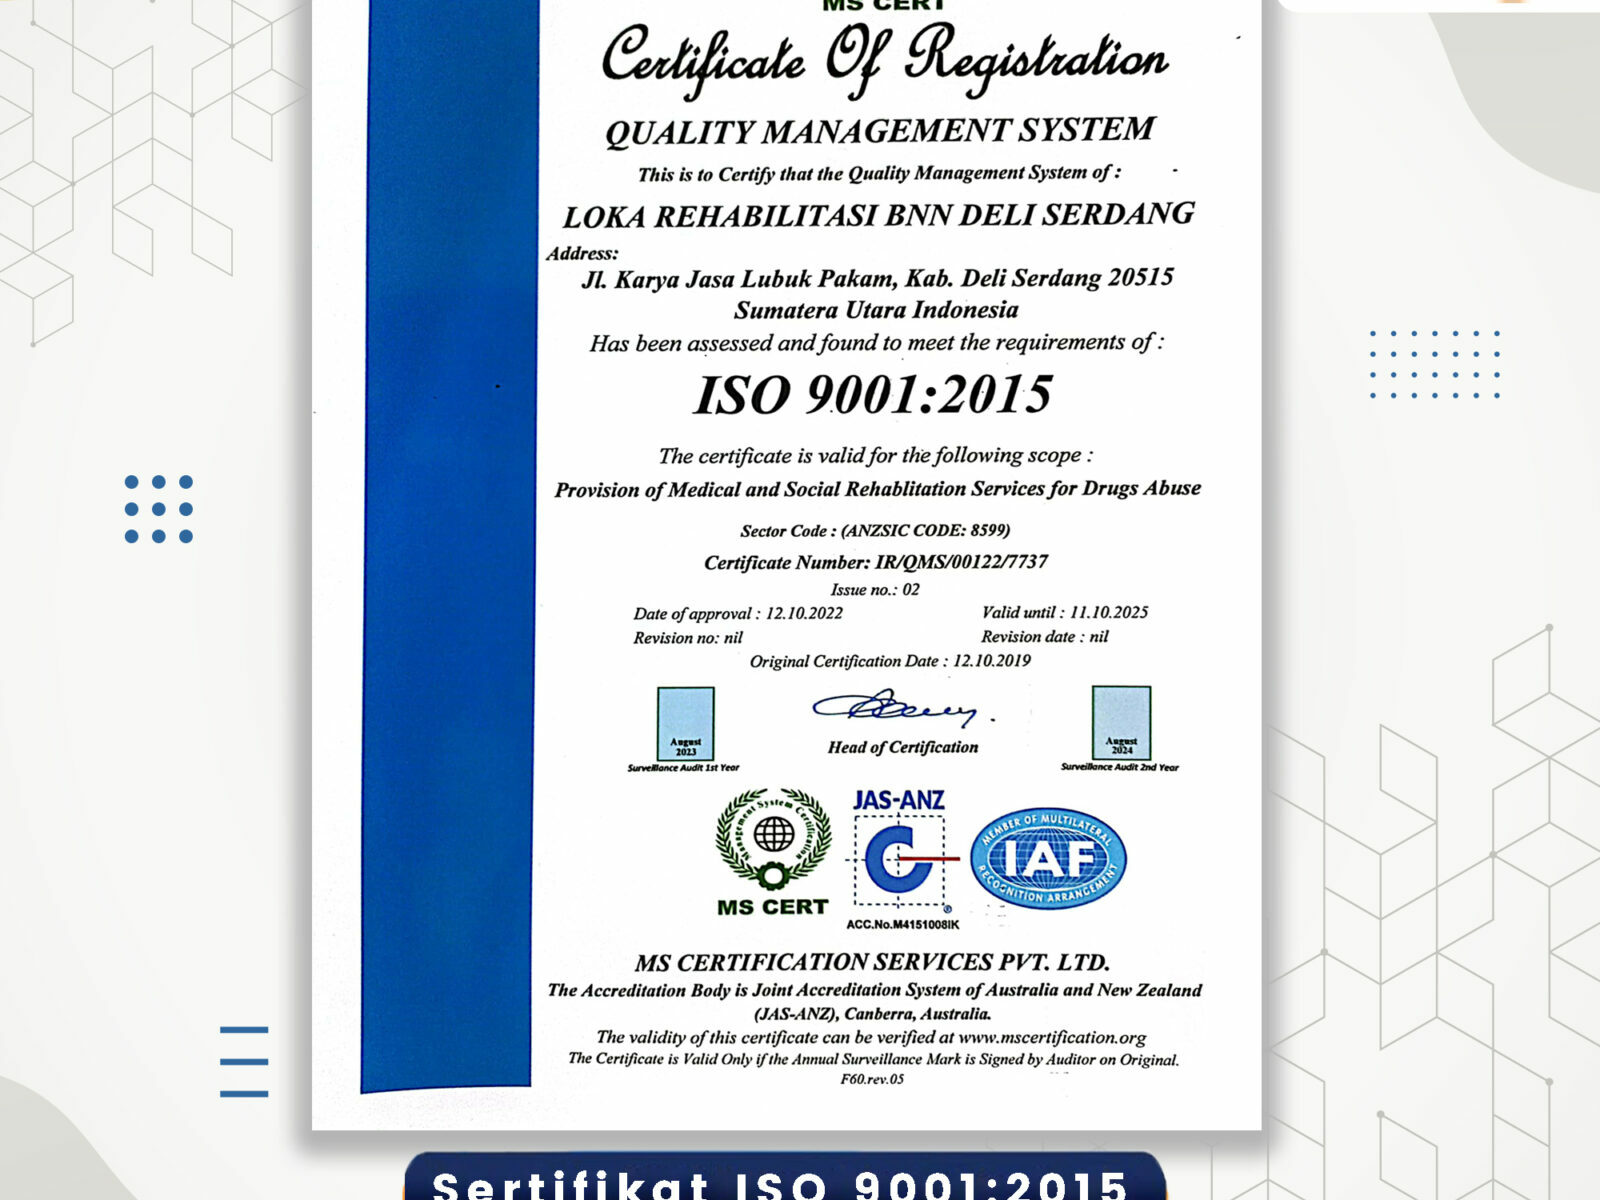 LOKA REHABILITASI BNN DELI SERDANG KEMBALI BERHASIL MERAIH SERTIFIKAT ISO 9001:2015